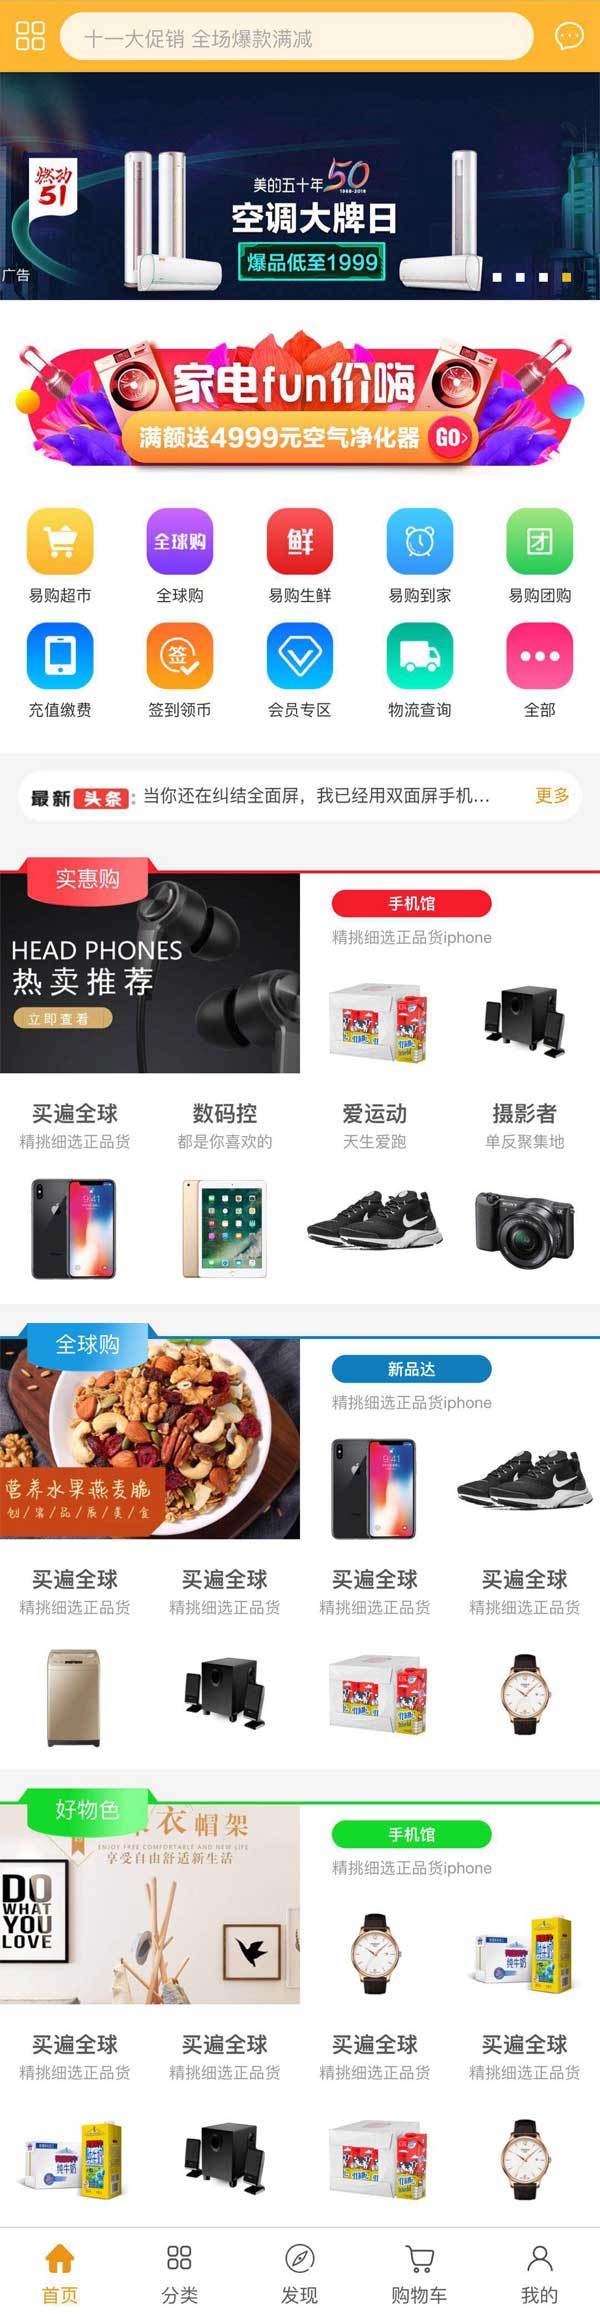 手机易购生活购物商城app官网模板 html5网站源码下载 DIV+CSS代码下载